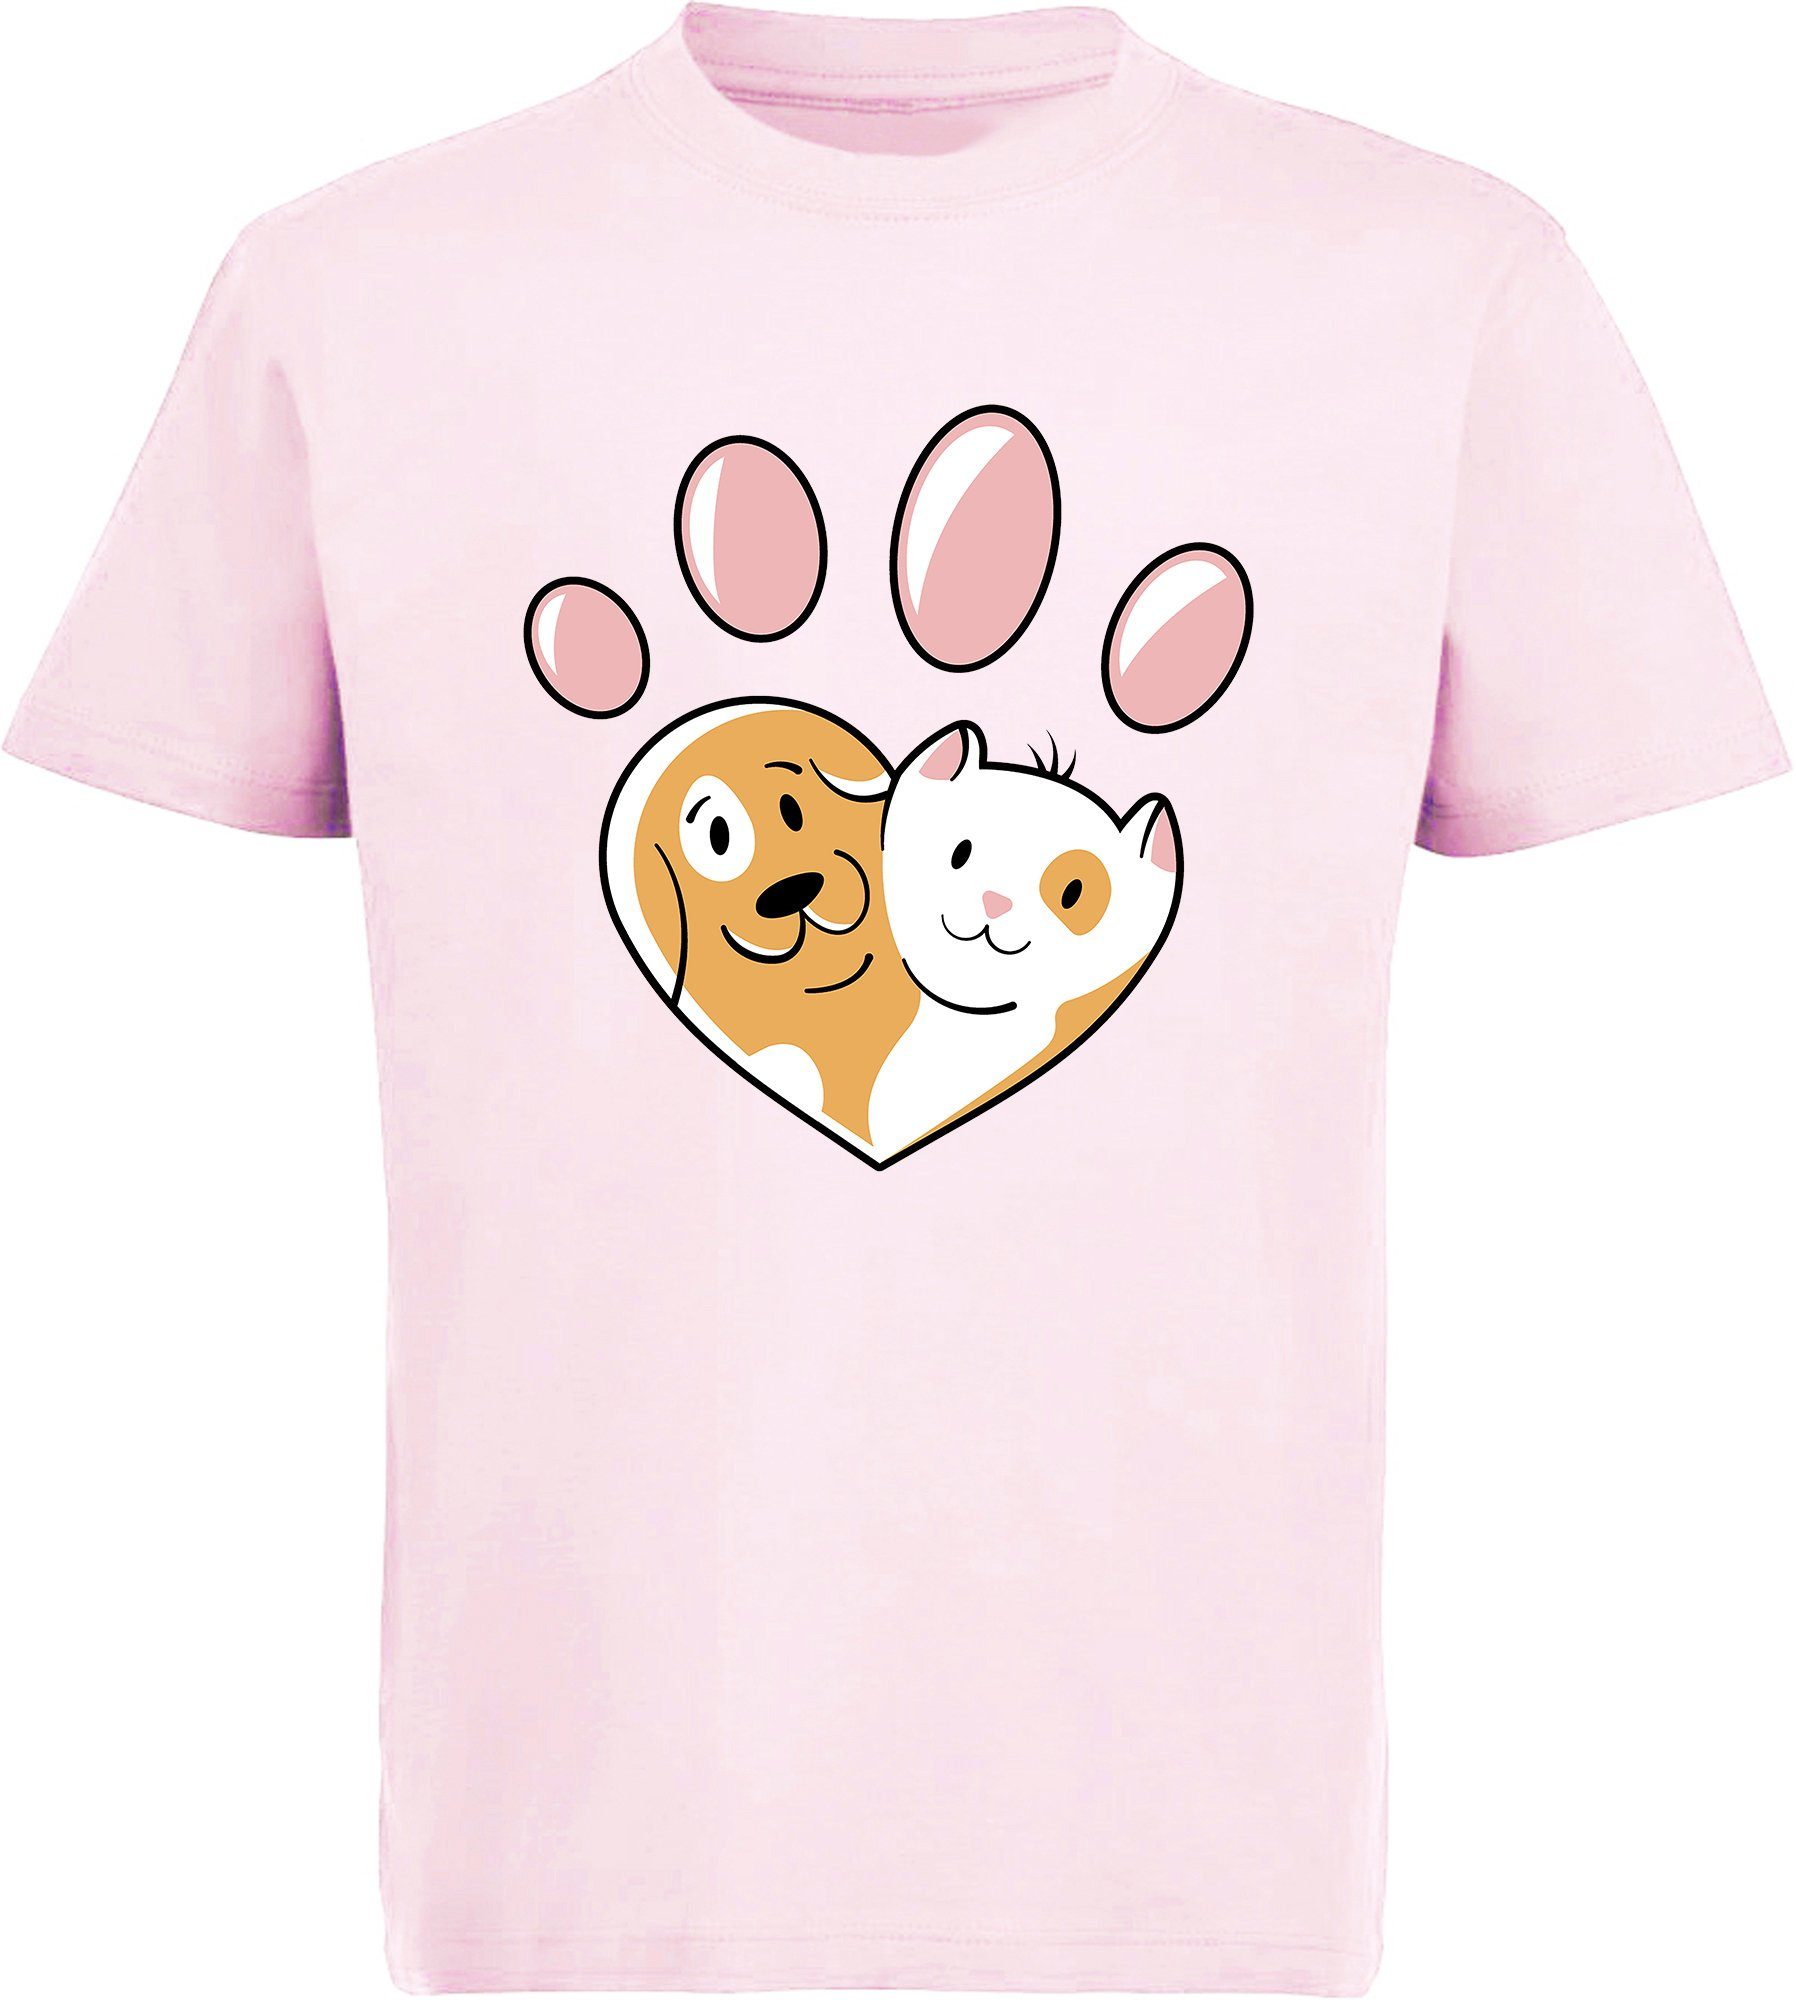 MyDesign24 Print-Shirt bedrucktes Kinder Hunde T-Shirt - Herz Pfote mit Hund und Katze Baumwollshirt mit Aufdruck, i223 rosa